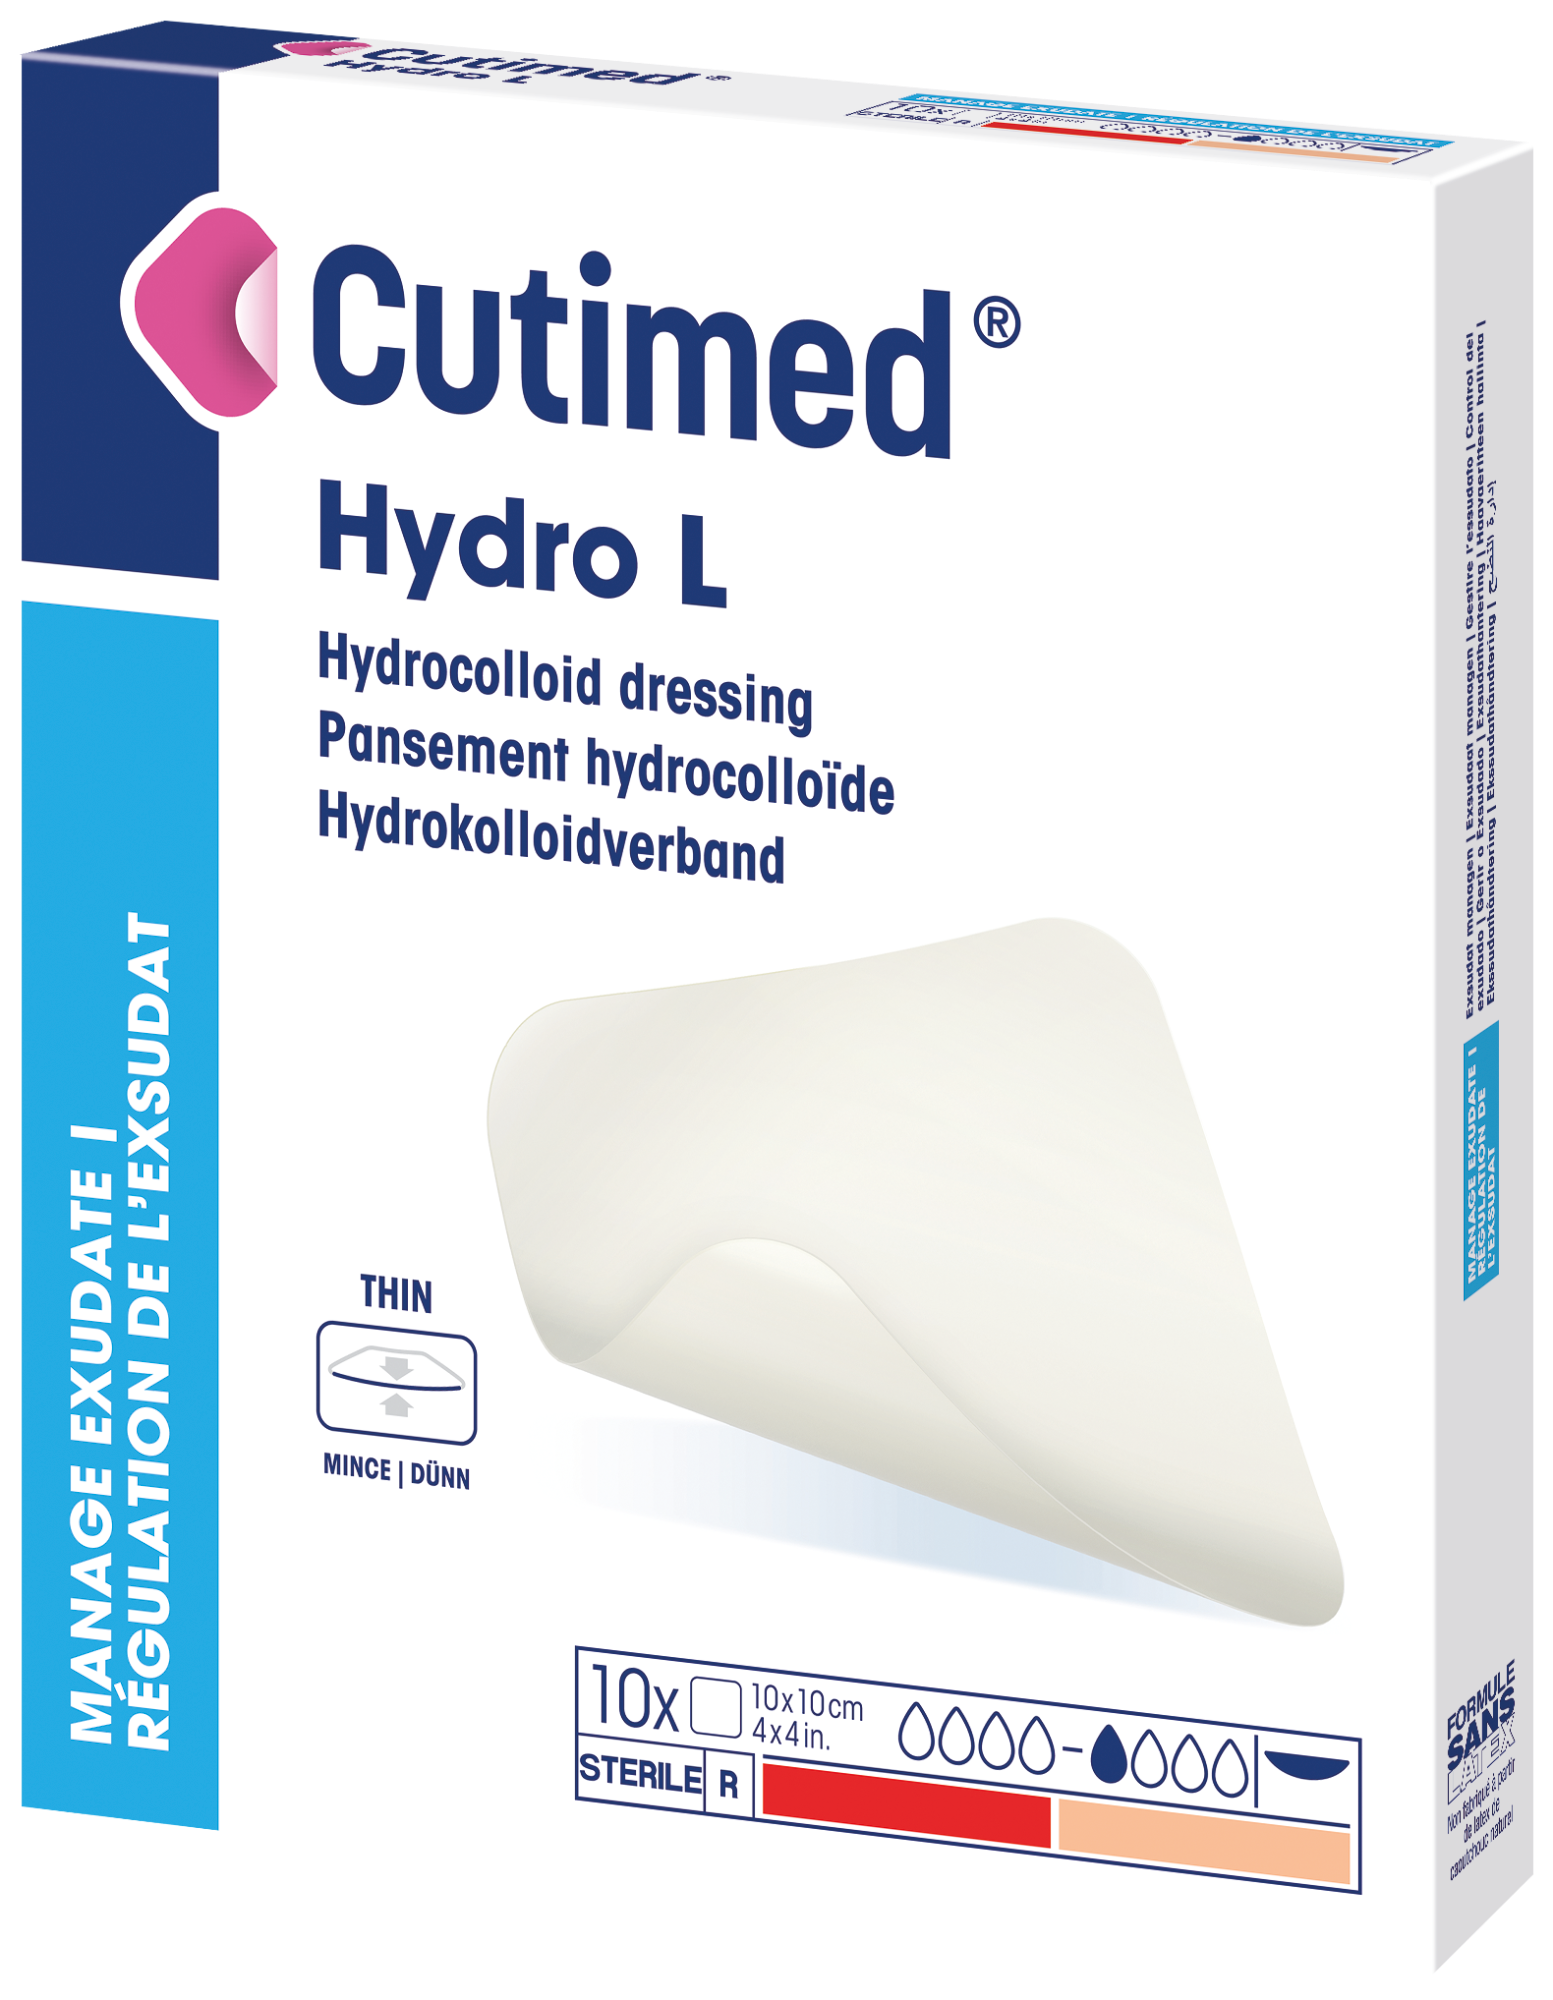 Imagen que muestra un paquete de Cutimed Hydro L